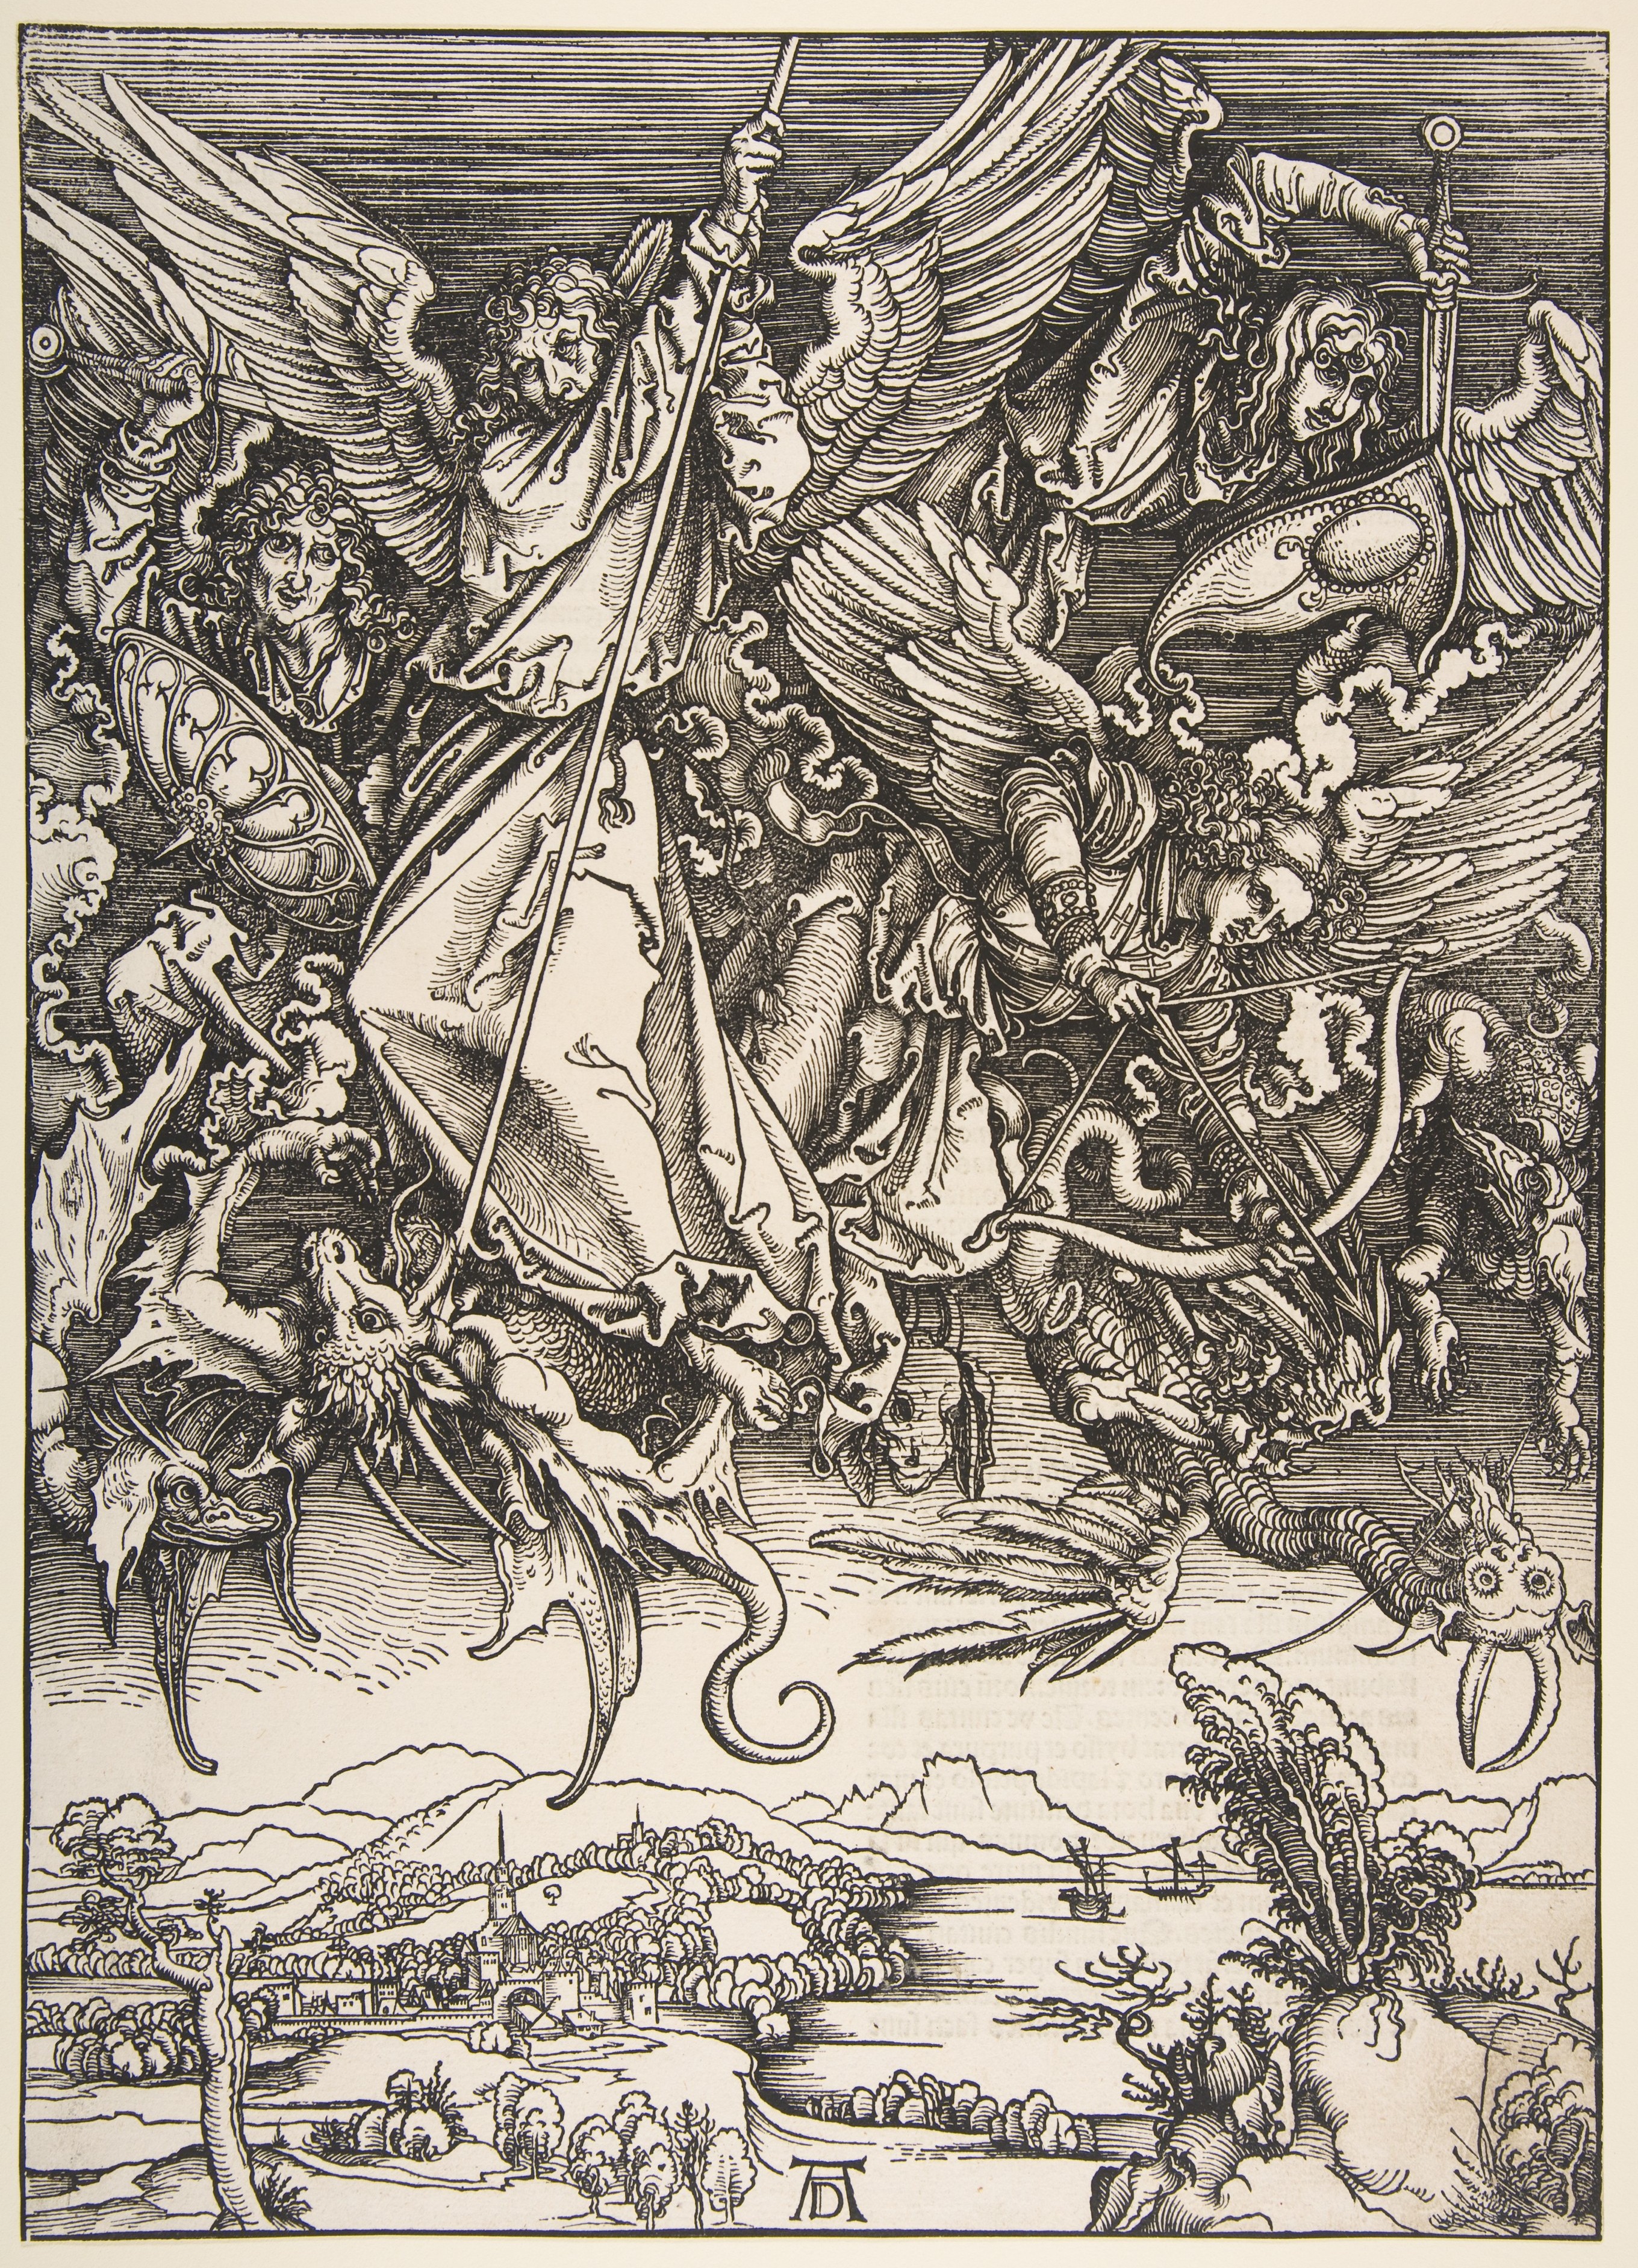 Svatý Michael bojuje s drakem by Albrecht Dürer - cca 1496-1498, vytištěno 1511 - 39,1 x 28 cm 